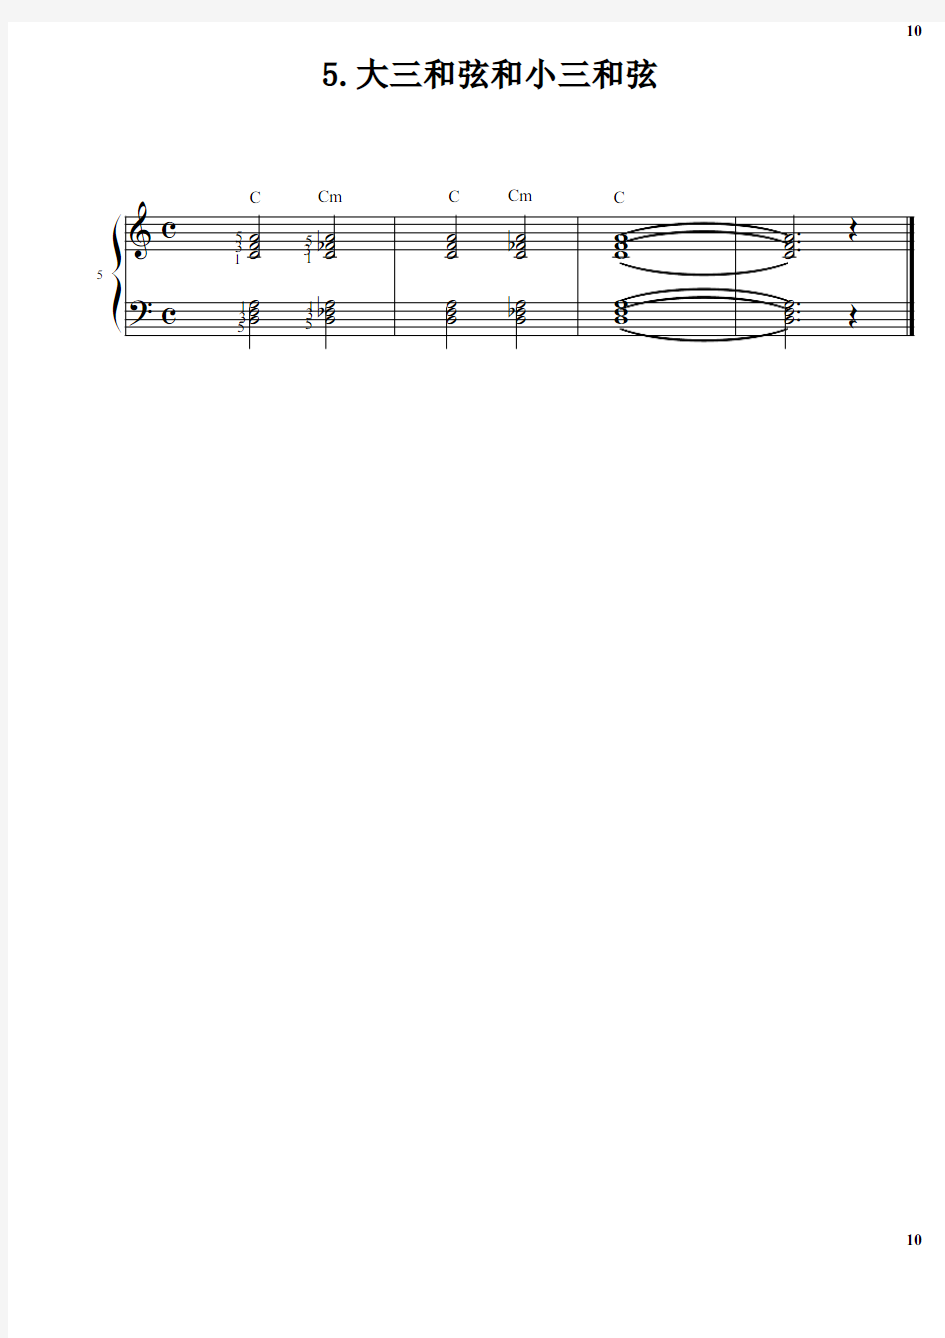 5.大三和弦和小三和弦 巴斯蒂安钢琴教程(4)基础部分 原版 正谱 五线谱 钢琴谱